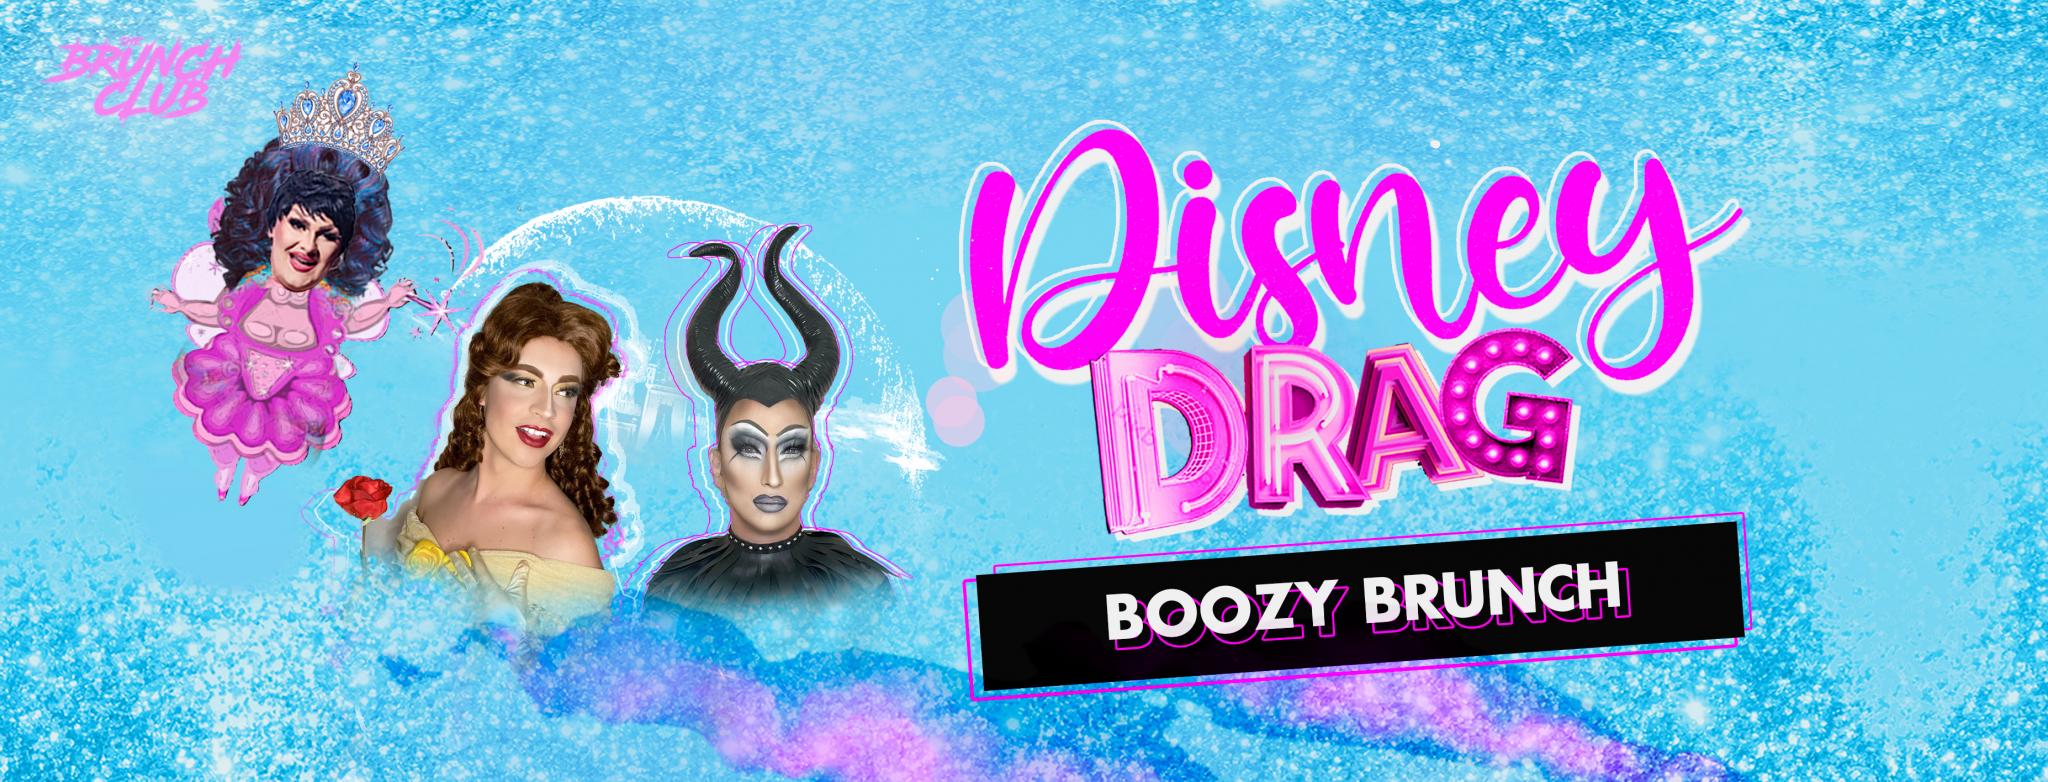 Disney Drag Boozy Brunch - Glasgow